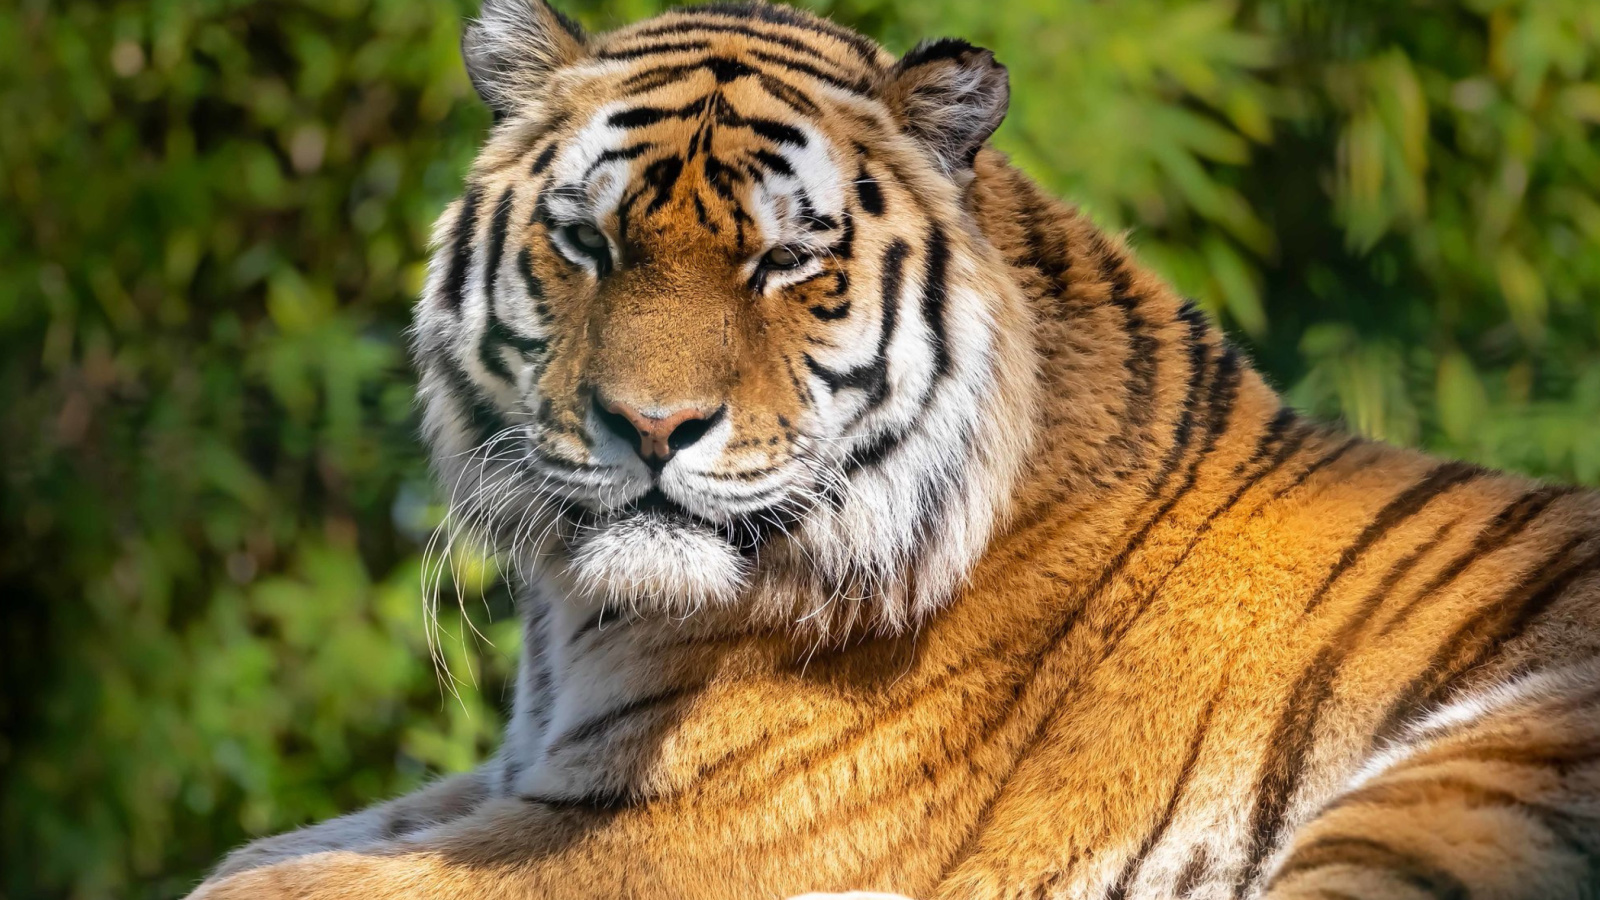 Malay Tiger at the New York Zoo screenshot #1 1600x900